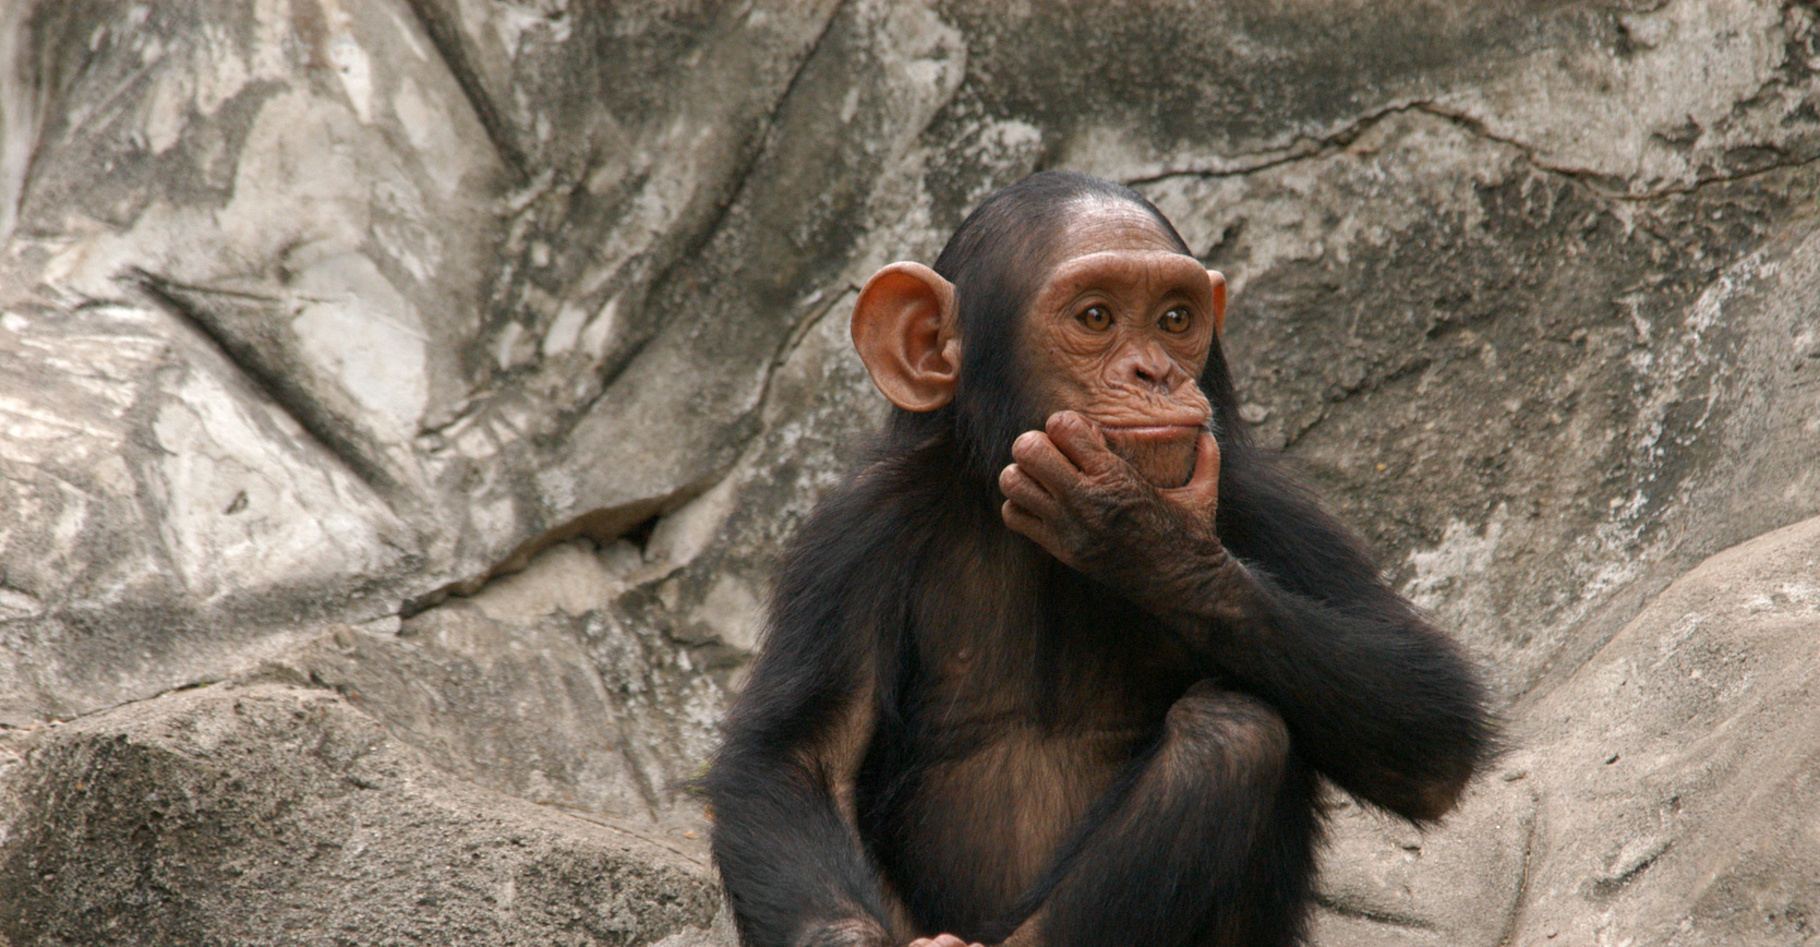 Les gestes sur lesquels s’appuie la communication entre chimpanzés sont peut-être plus proches de notre langage que ce que nous pensions. © Vladimir Wrangel, Fotolia